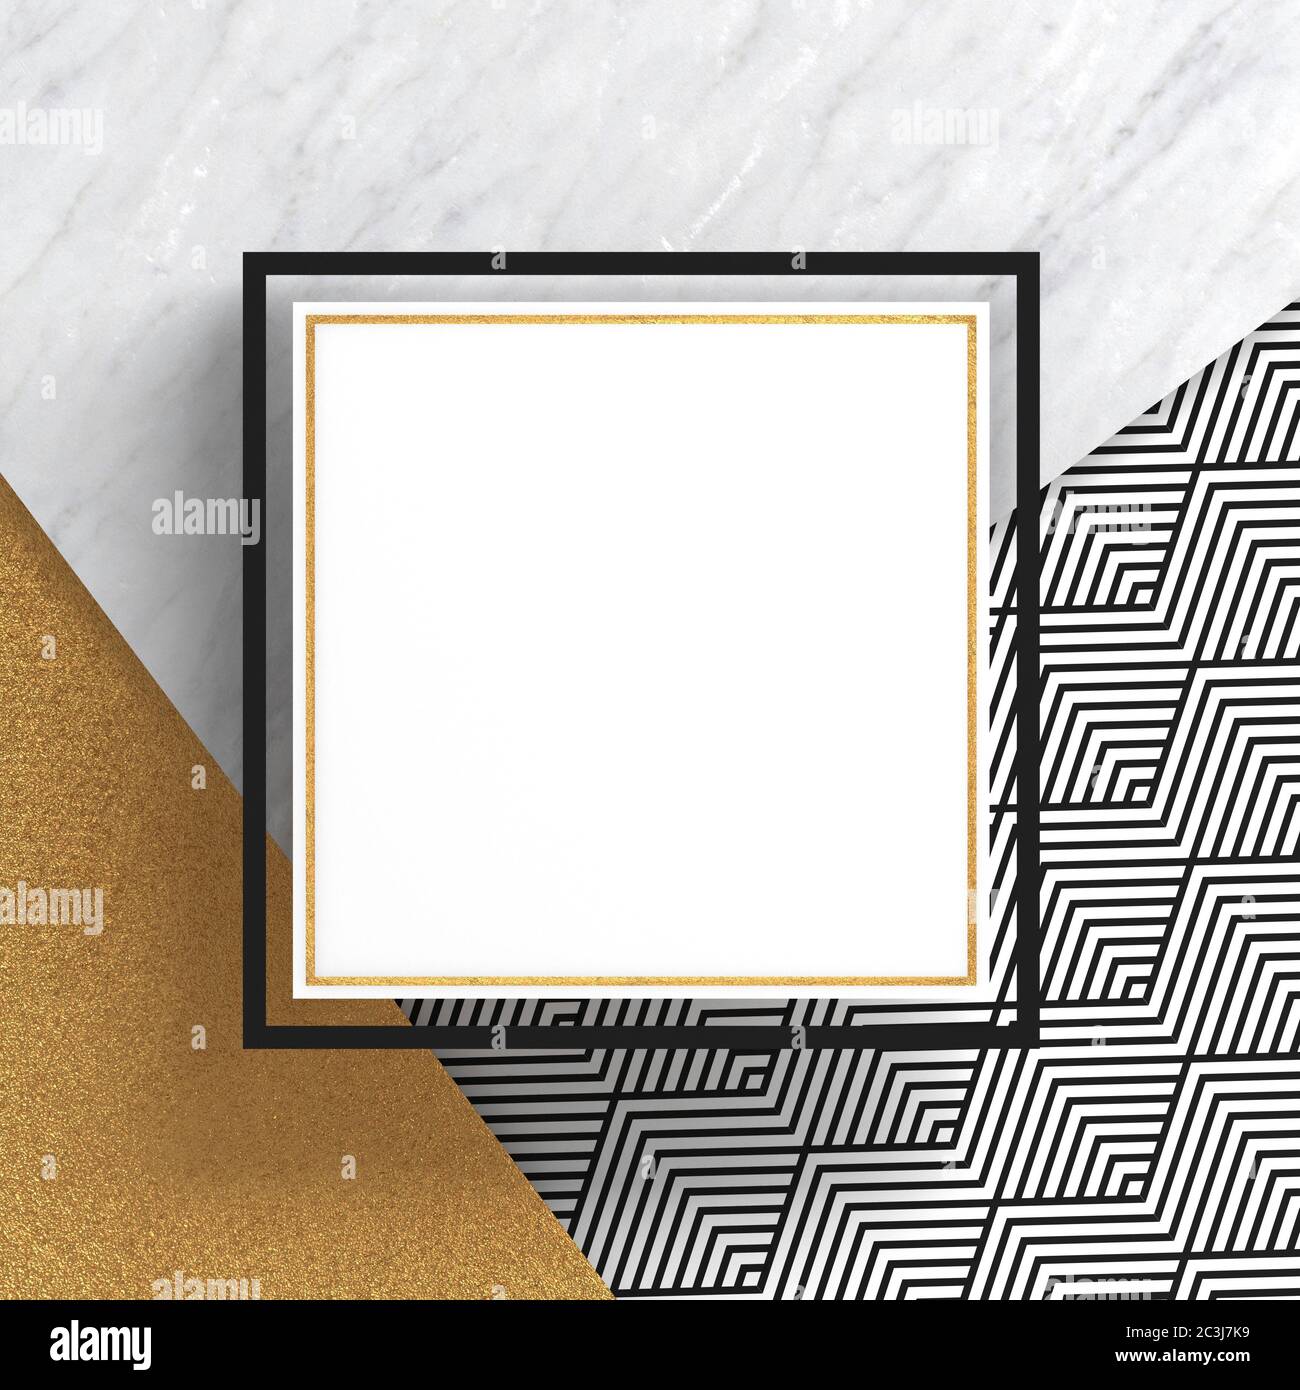 Marco de borde cuadrado sobre piedra de mármol blanco y superficie de oro con un patrón en zigzag sobre fondo blanco. Espacio de copia. Composición geométrica abstracta. 3D Foto de stock